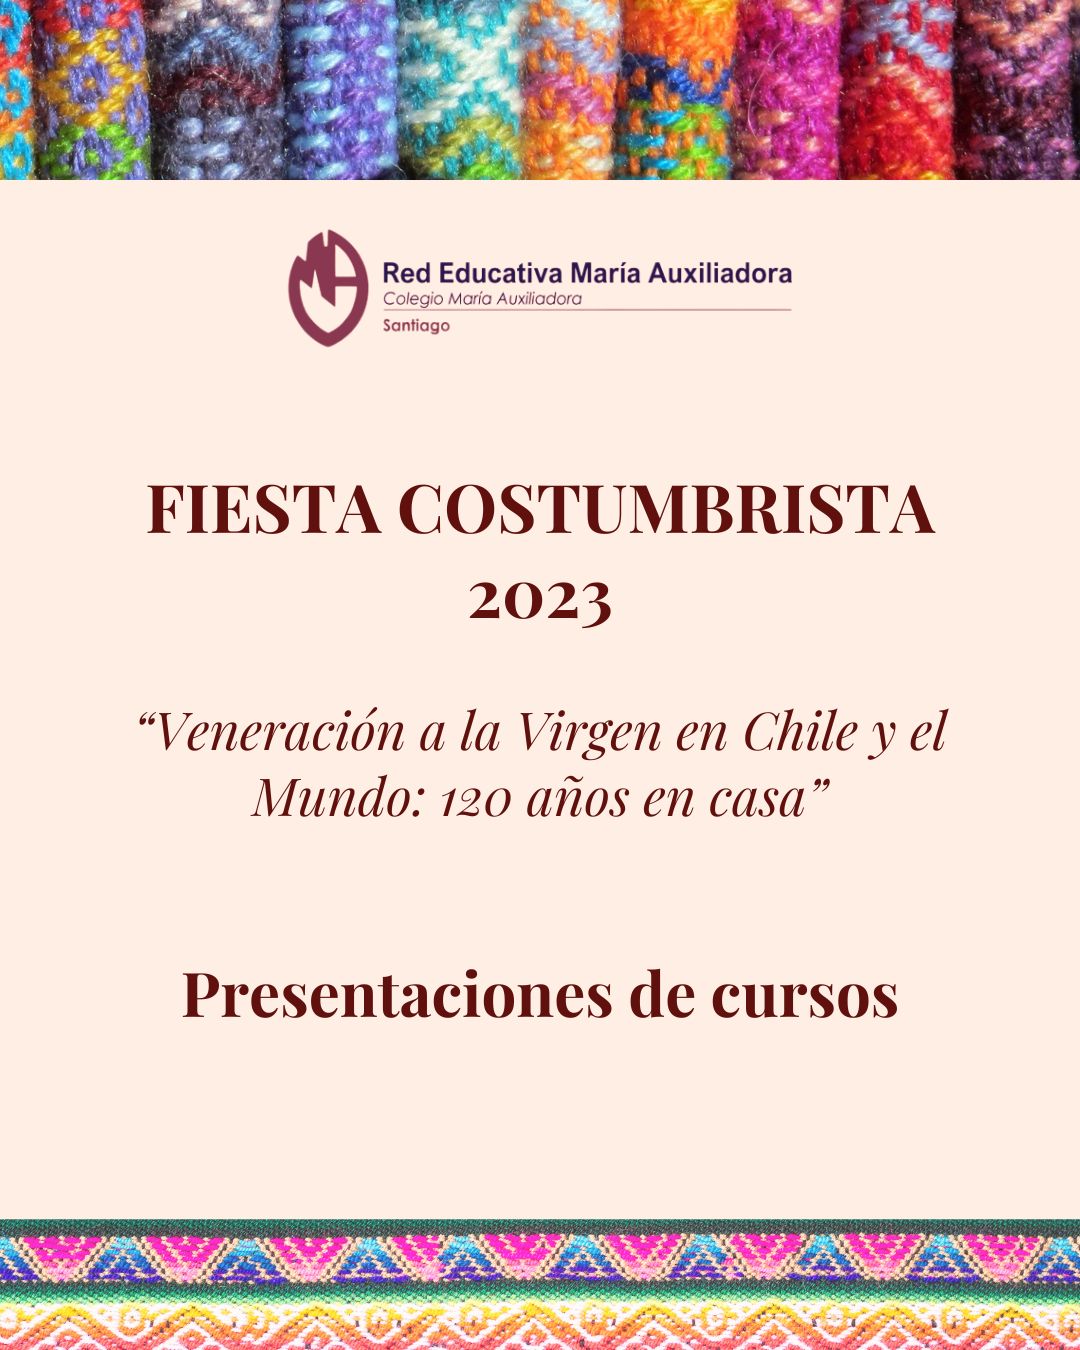 Fiesta Costumbrista - Presentaciones de cursos y galería fotográfica